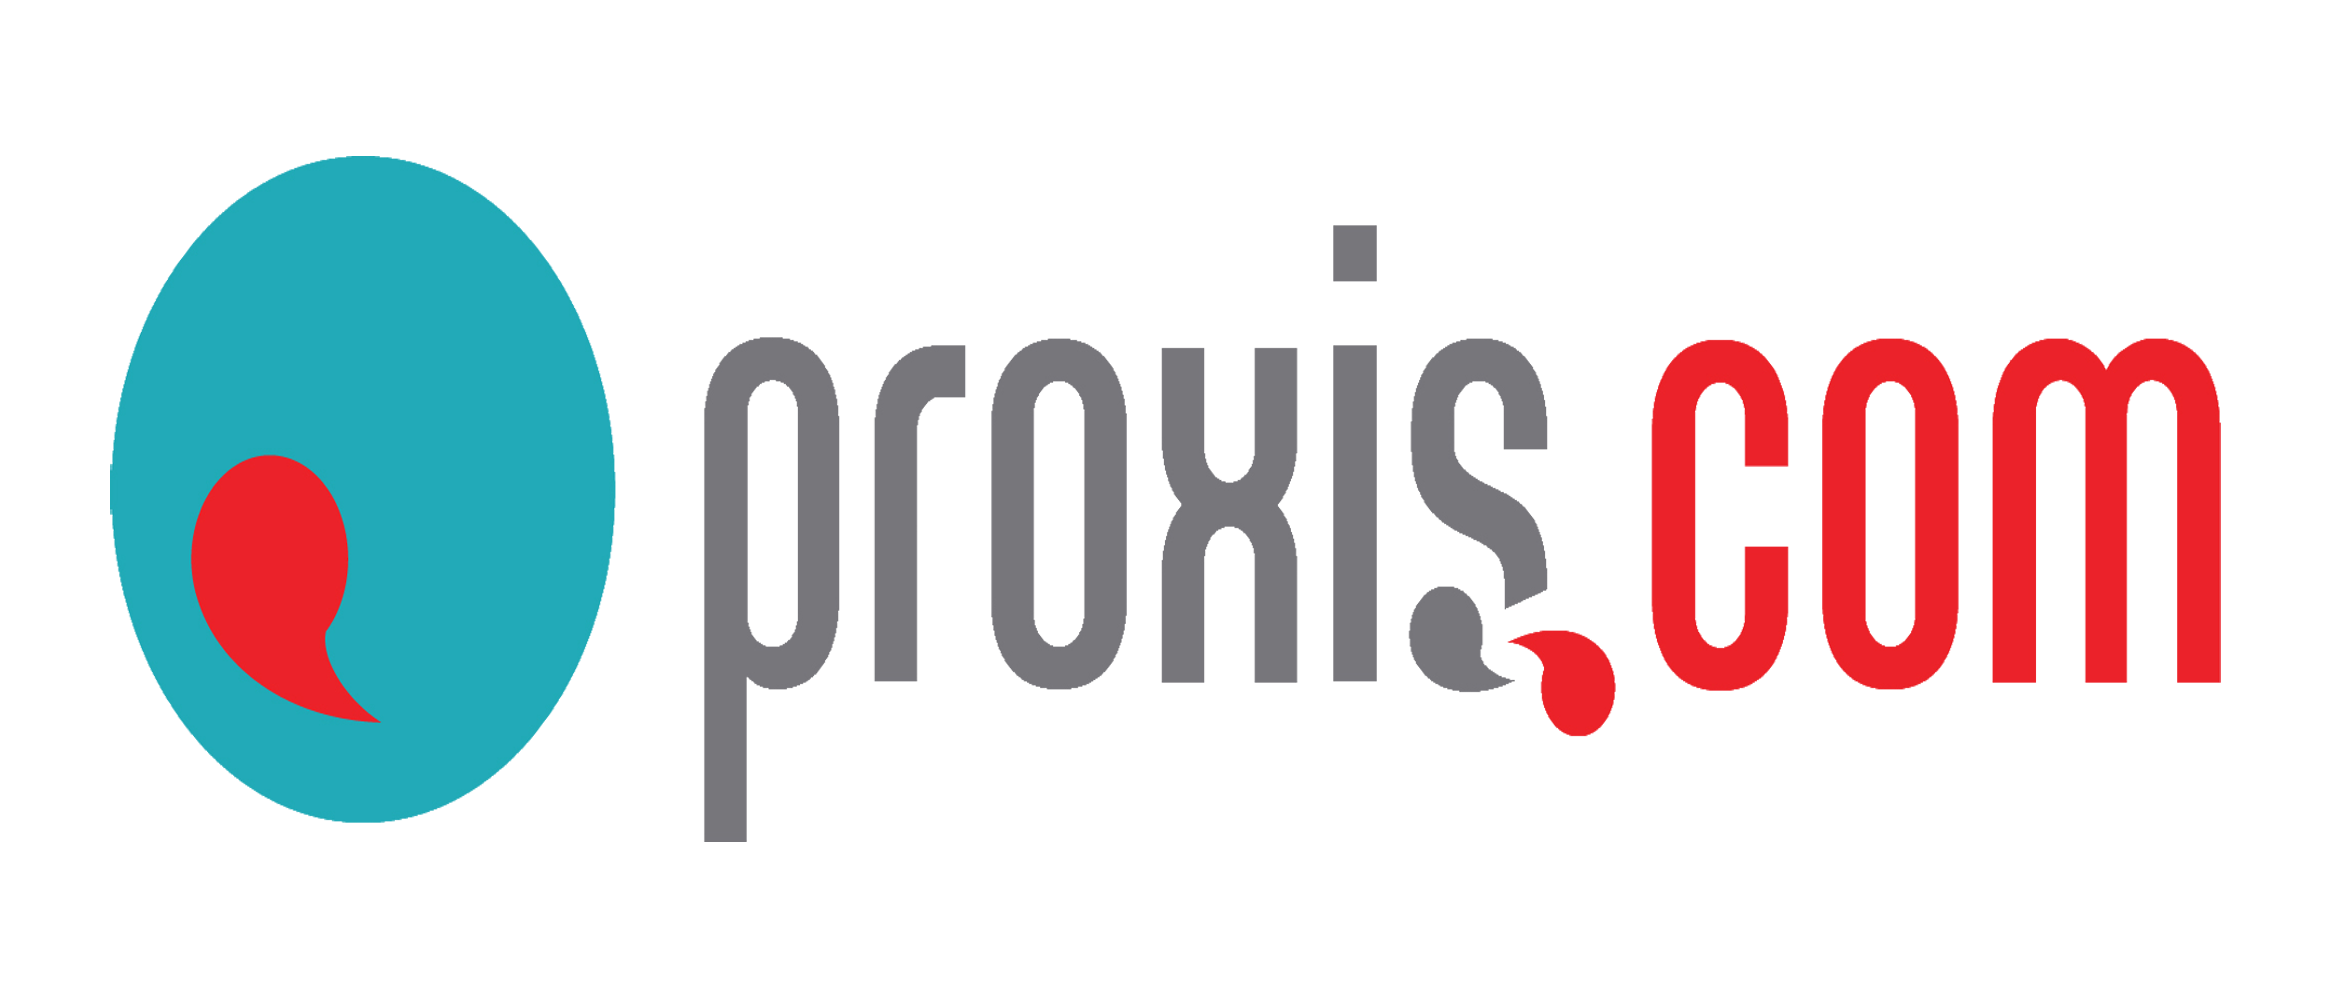 Proxis.com